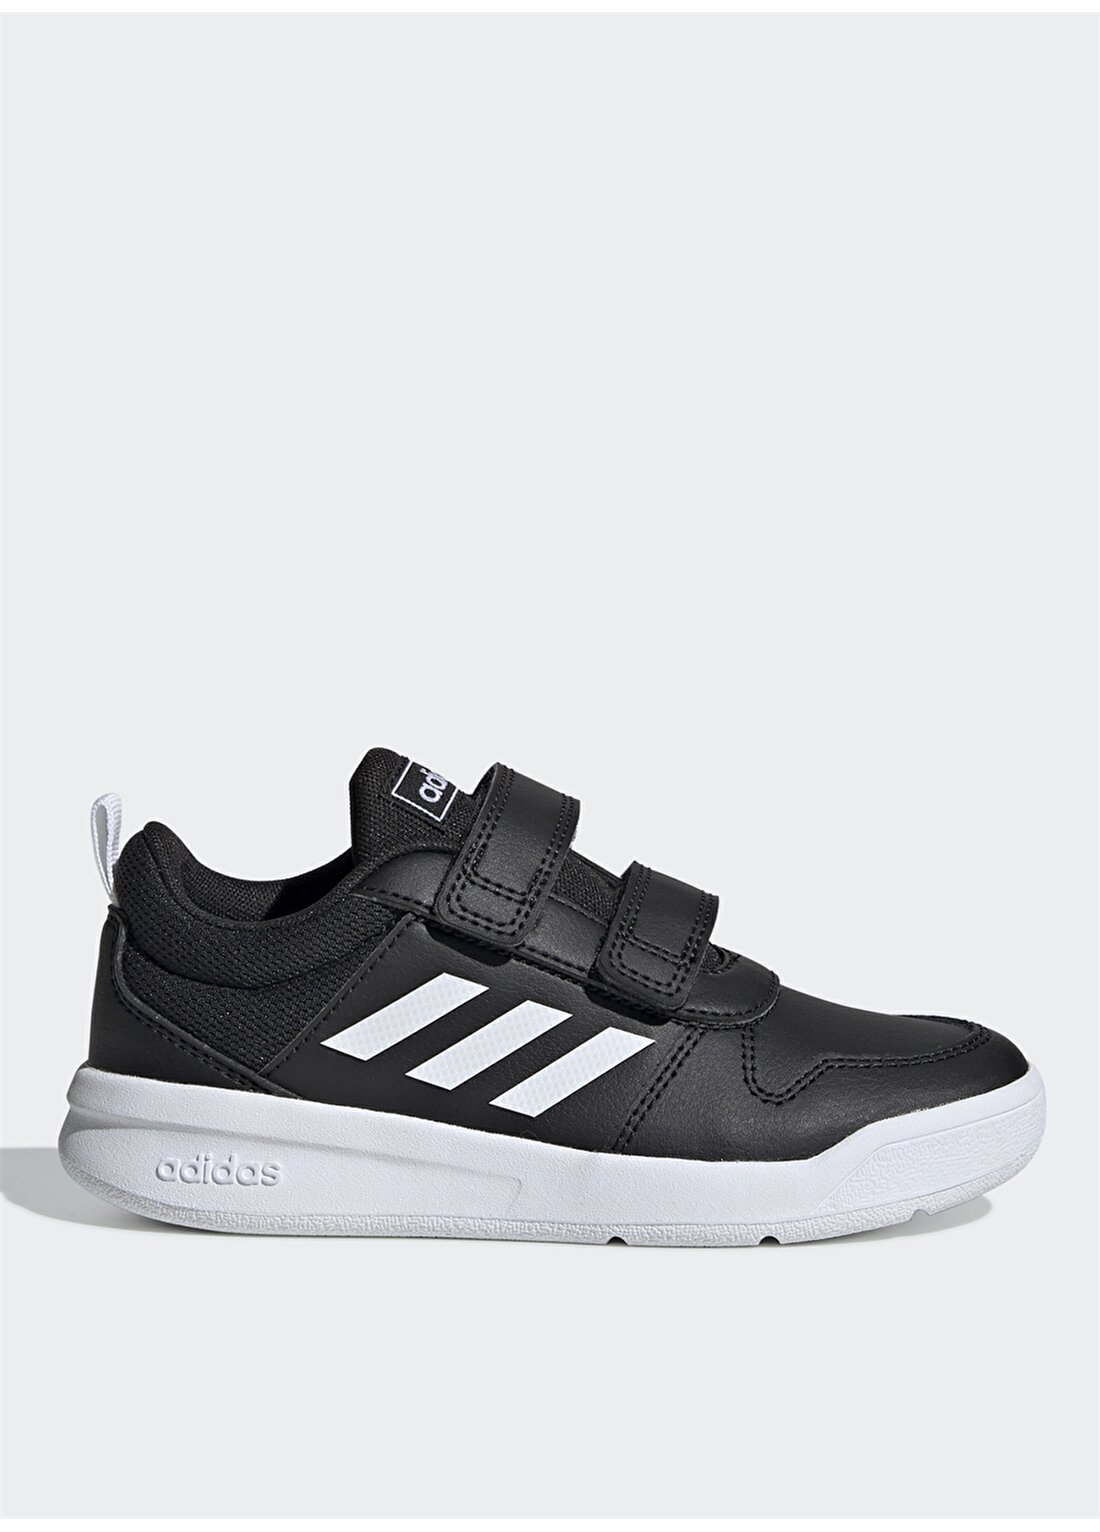 Adidas EF1092 Tensaur Siyah-Beyaz Erkekçocuk Yürüyüş Ayakkabısı